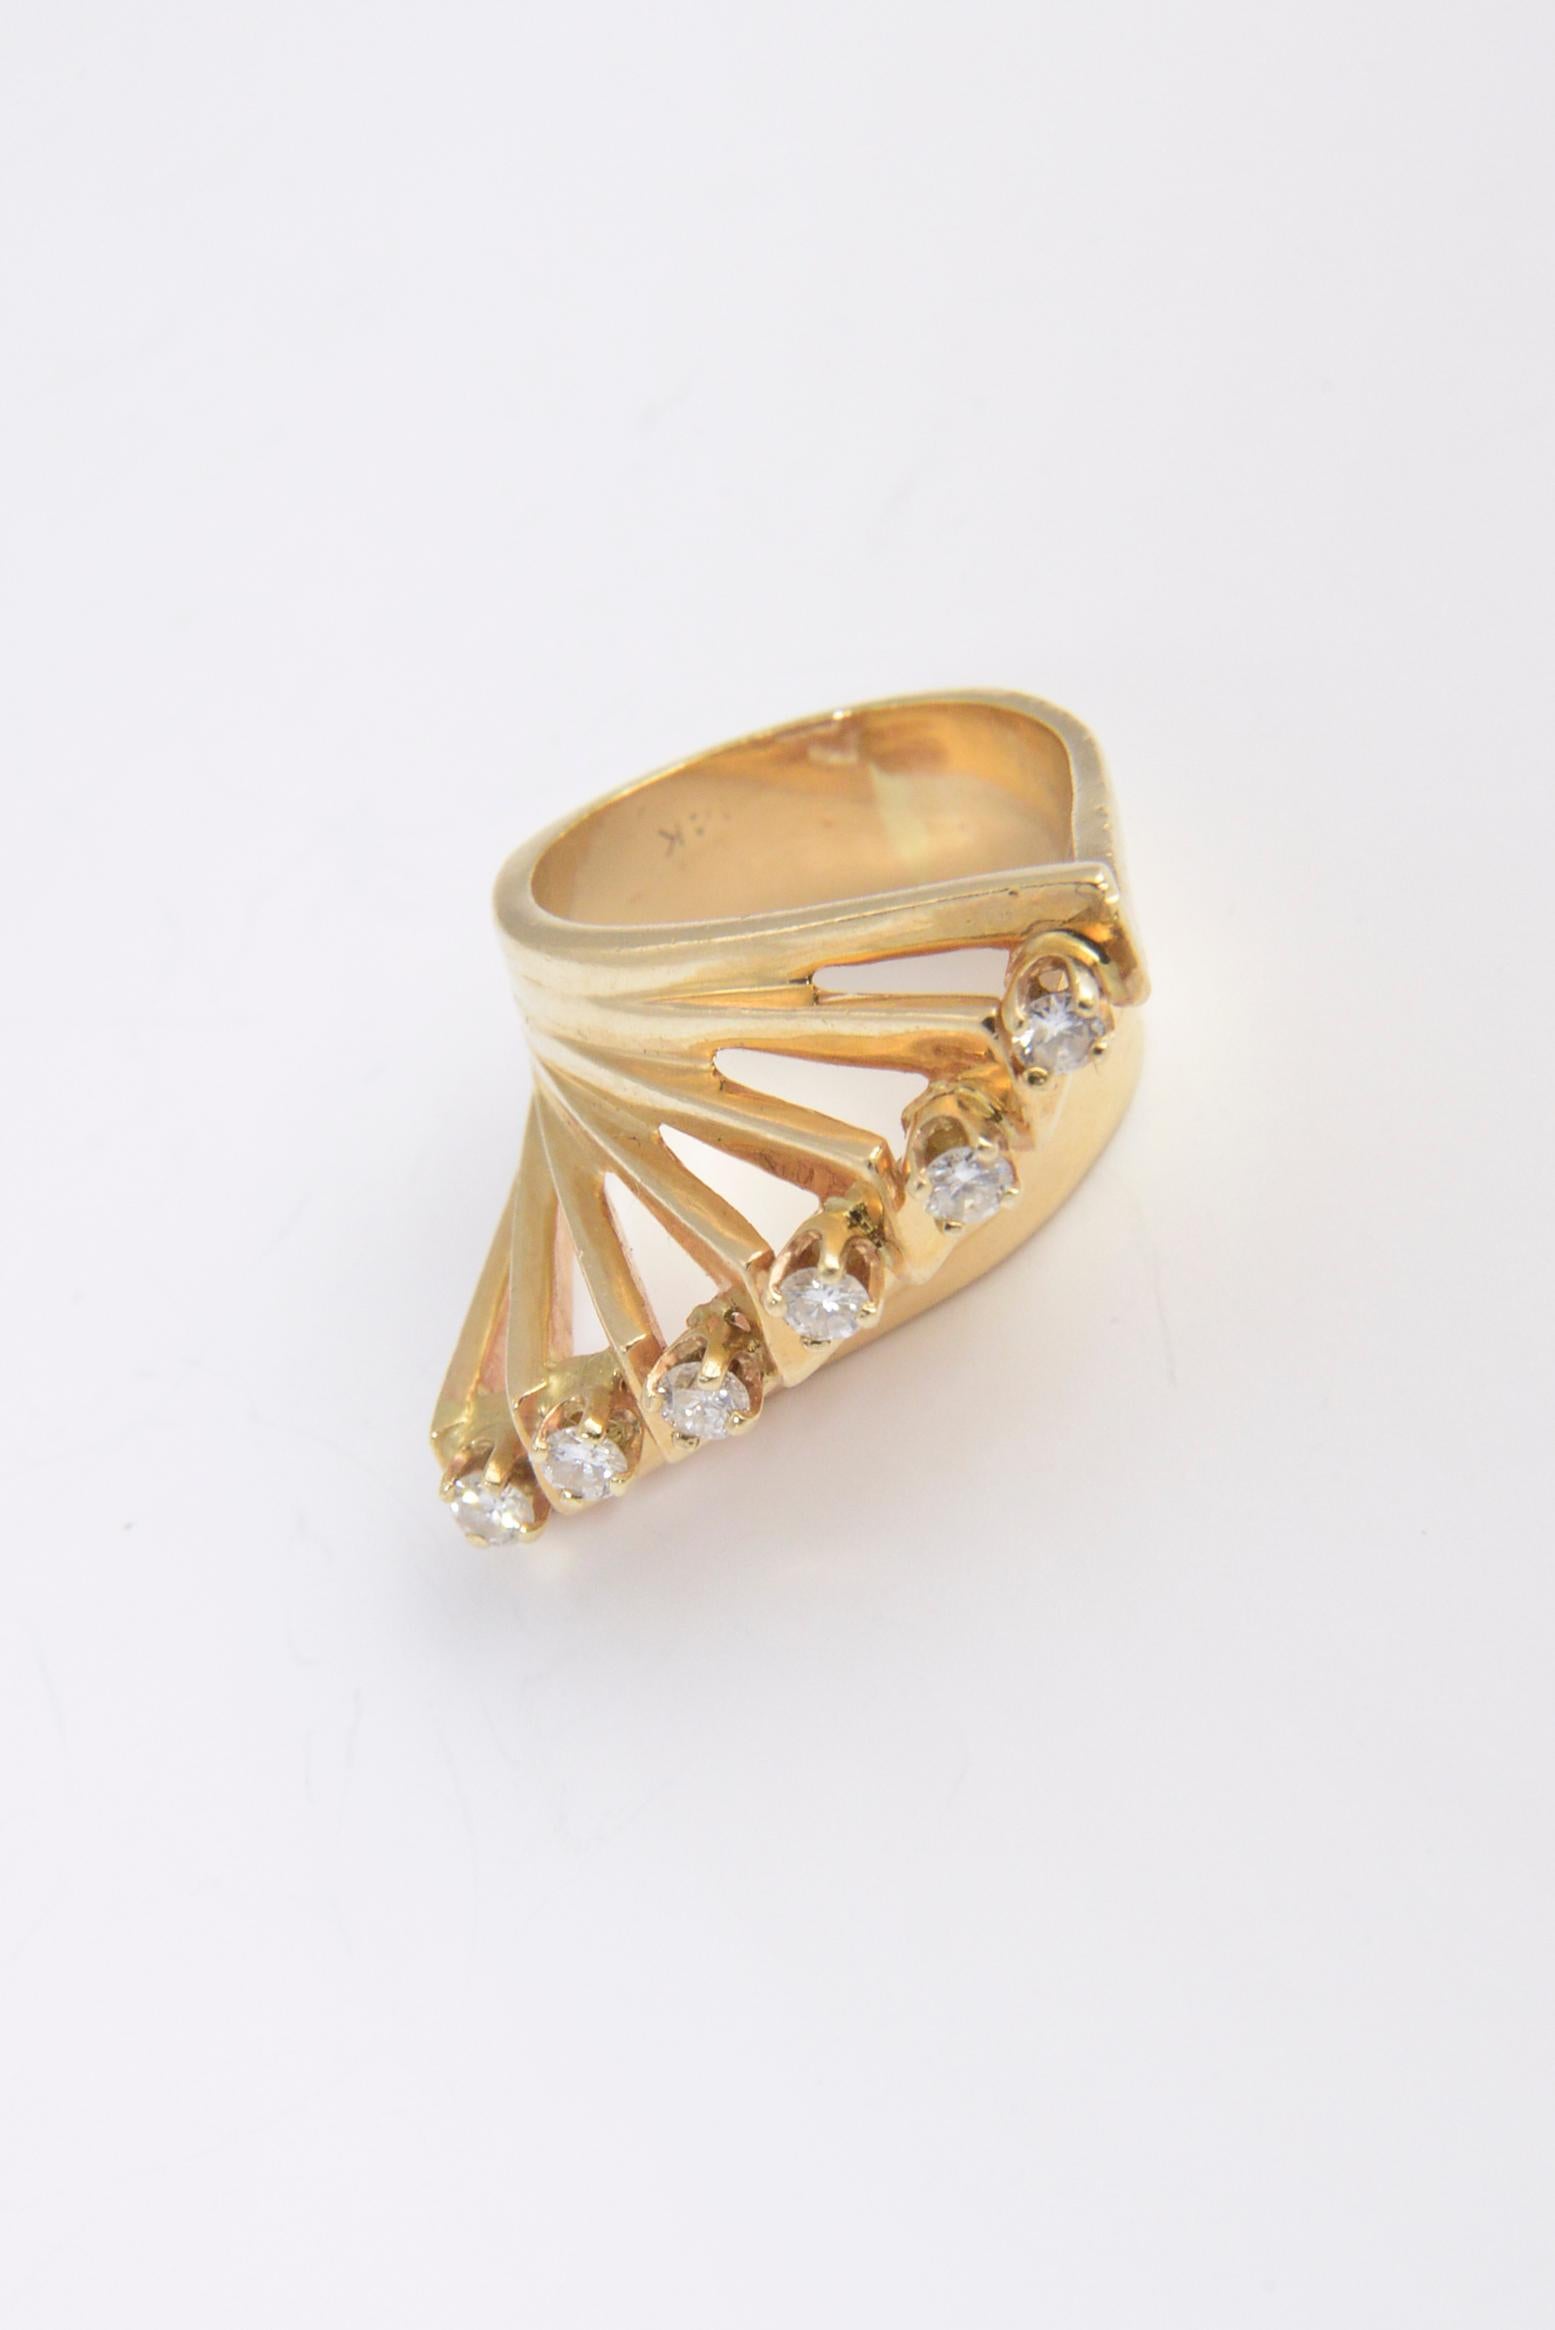 1970er Jahre Fantastischer Ring im modernistischen Stil, der von einem Juwelier für seine Stieftochter angefertigt wurde.  Der Ring aus 14-karätigem Gelbgold weist eine Reihe erhabener Dreiecke auf, die diagonal verlaufen.   An der Spitze jedes